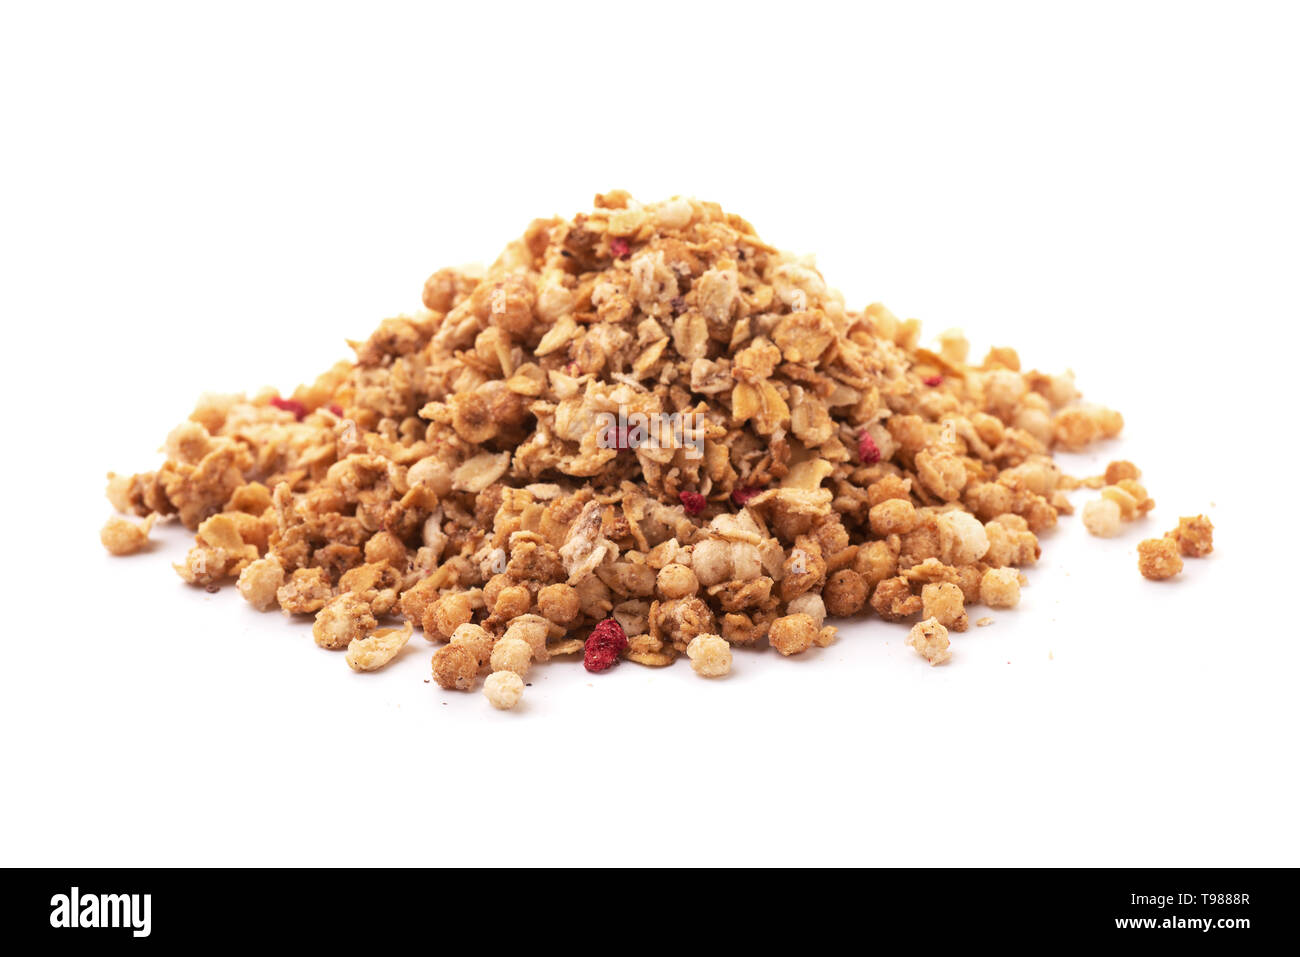 Heap of premium fruit and nut muesli isolated on white background Stock Photo